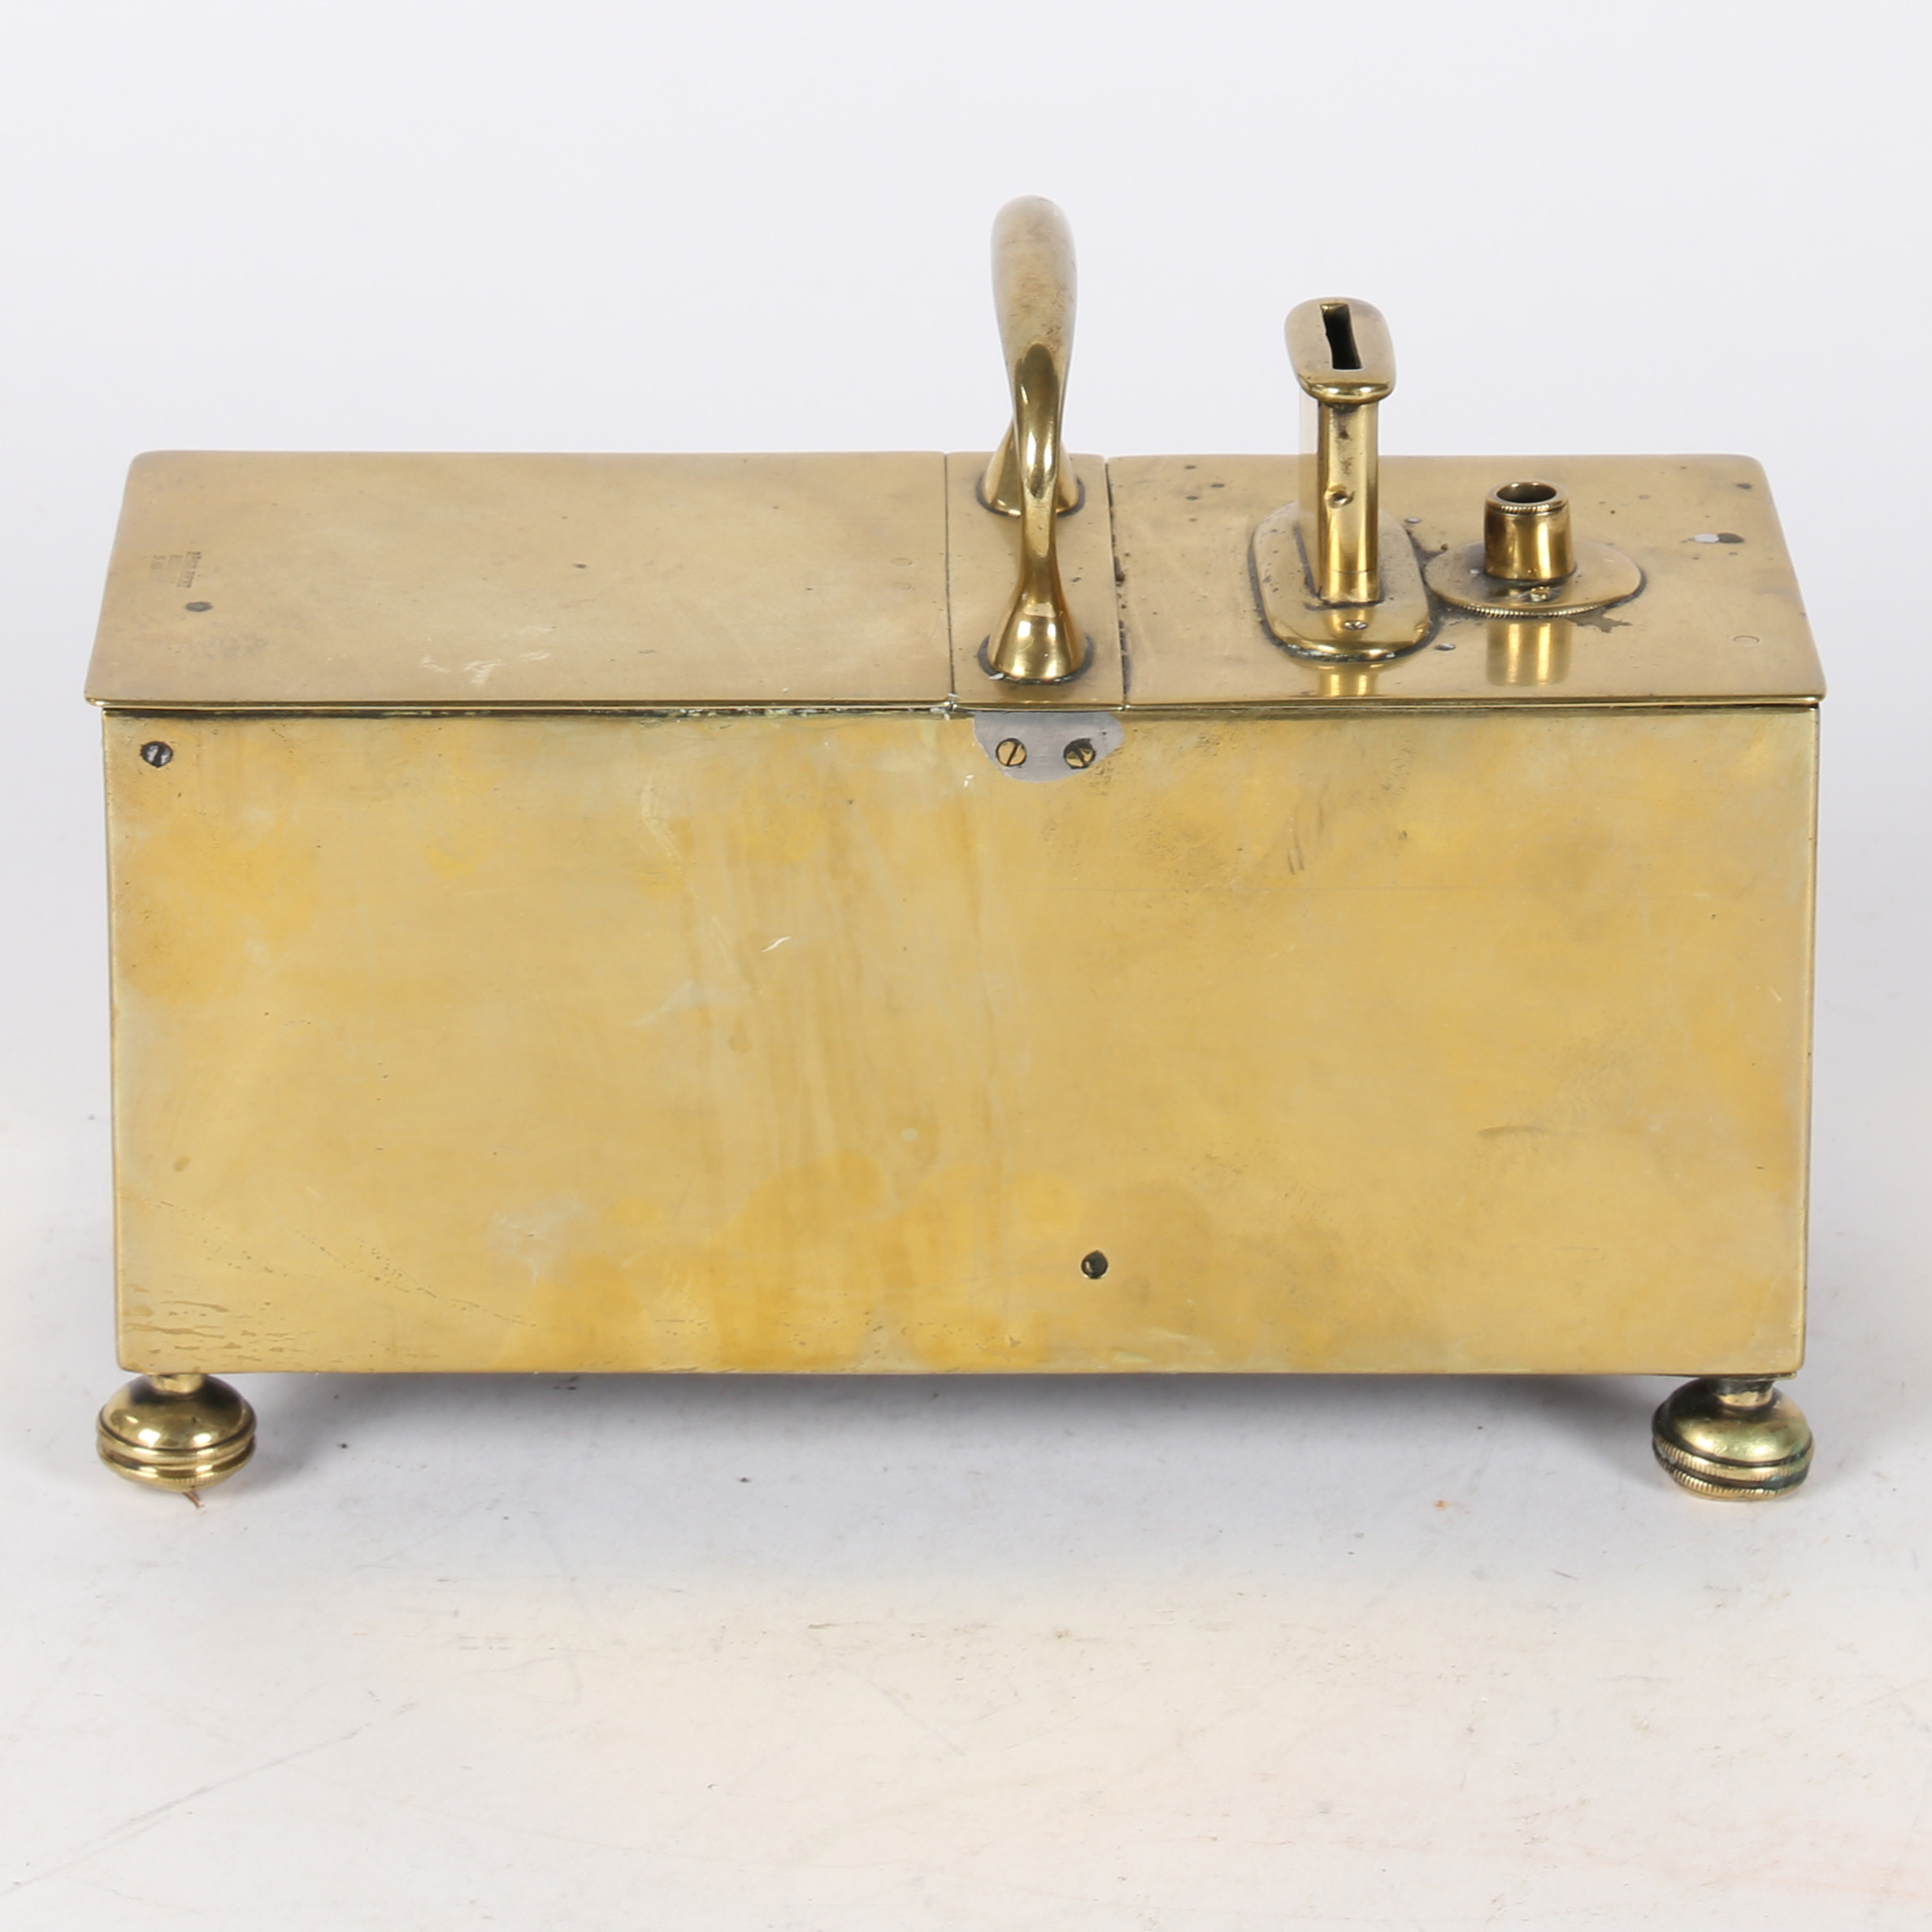 A 19TH CENTURY BRASS "GILBERT" PATTERN HONESTY BOX.